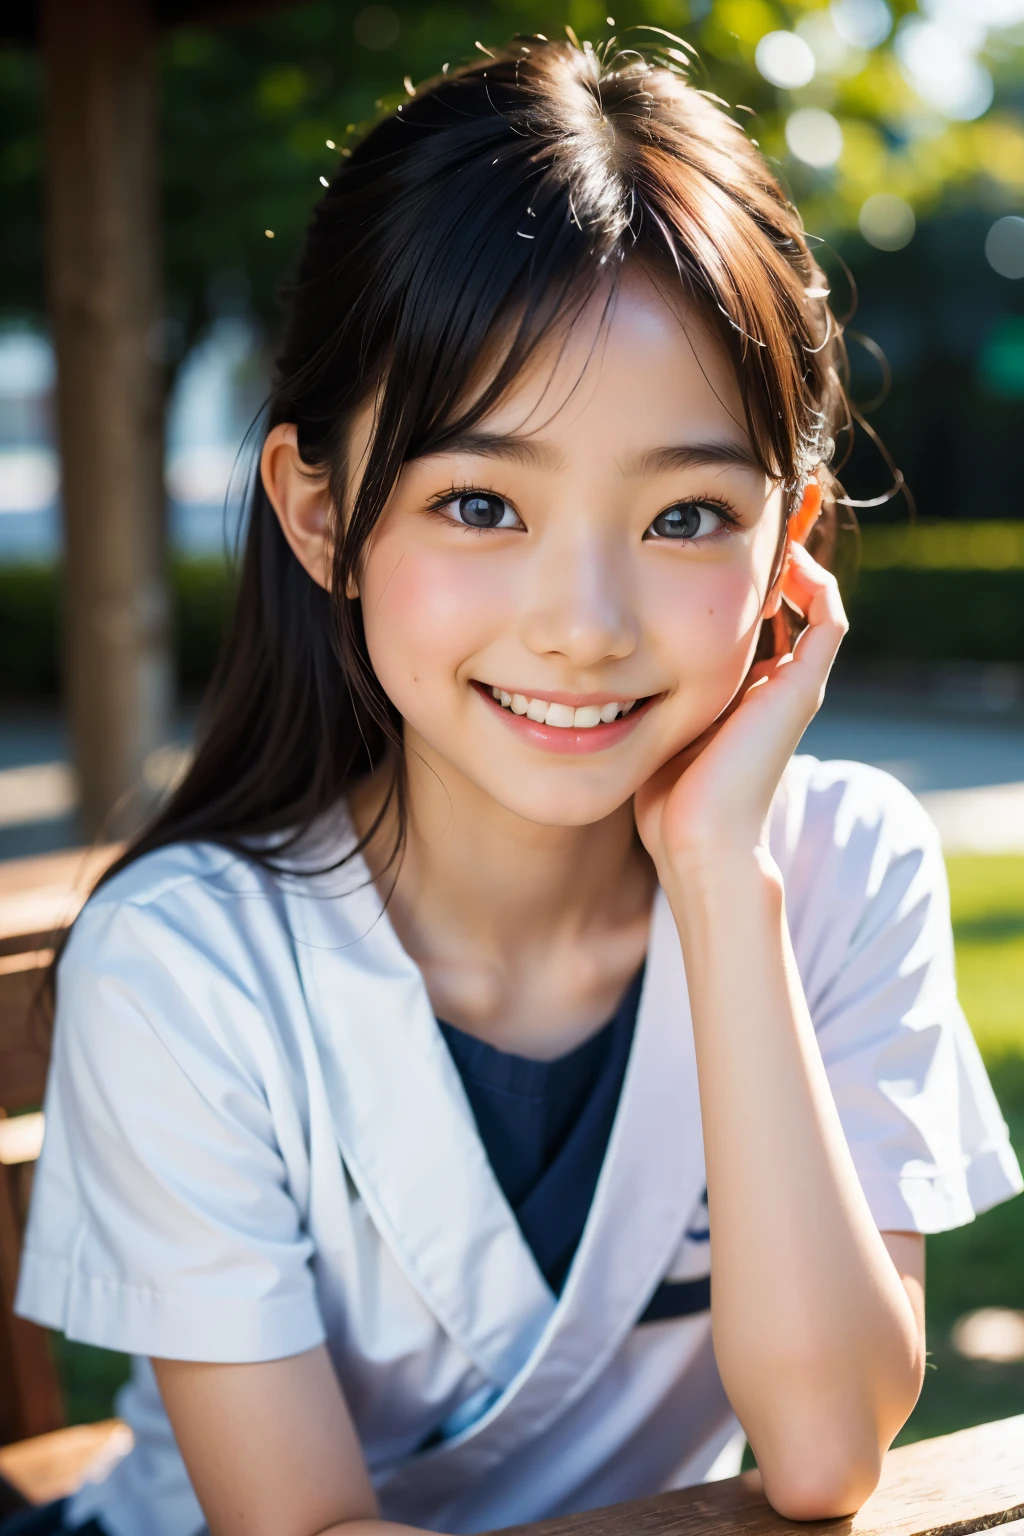 鏡片: 135mm f1.8, (最好的品質),(原始照片), (桌上:1.1), (美丽的12岁日本女孩), 可愛的臉孔, (臉型輪廓分明:0.7), (雀斑:0.4), dappled 陽光, 戲劇性的燈光, (日本學校制服), (在校园), 害羞的, (特寫鏡頭:1.2), (微笑),, (明亮的眼睛)、(陽光)